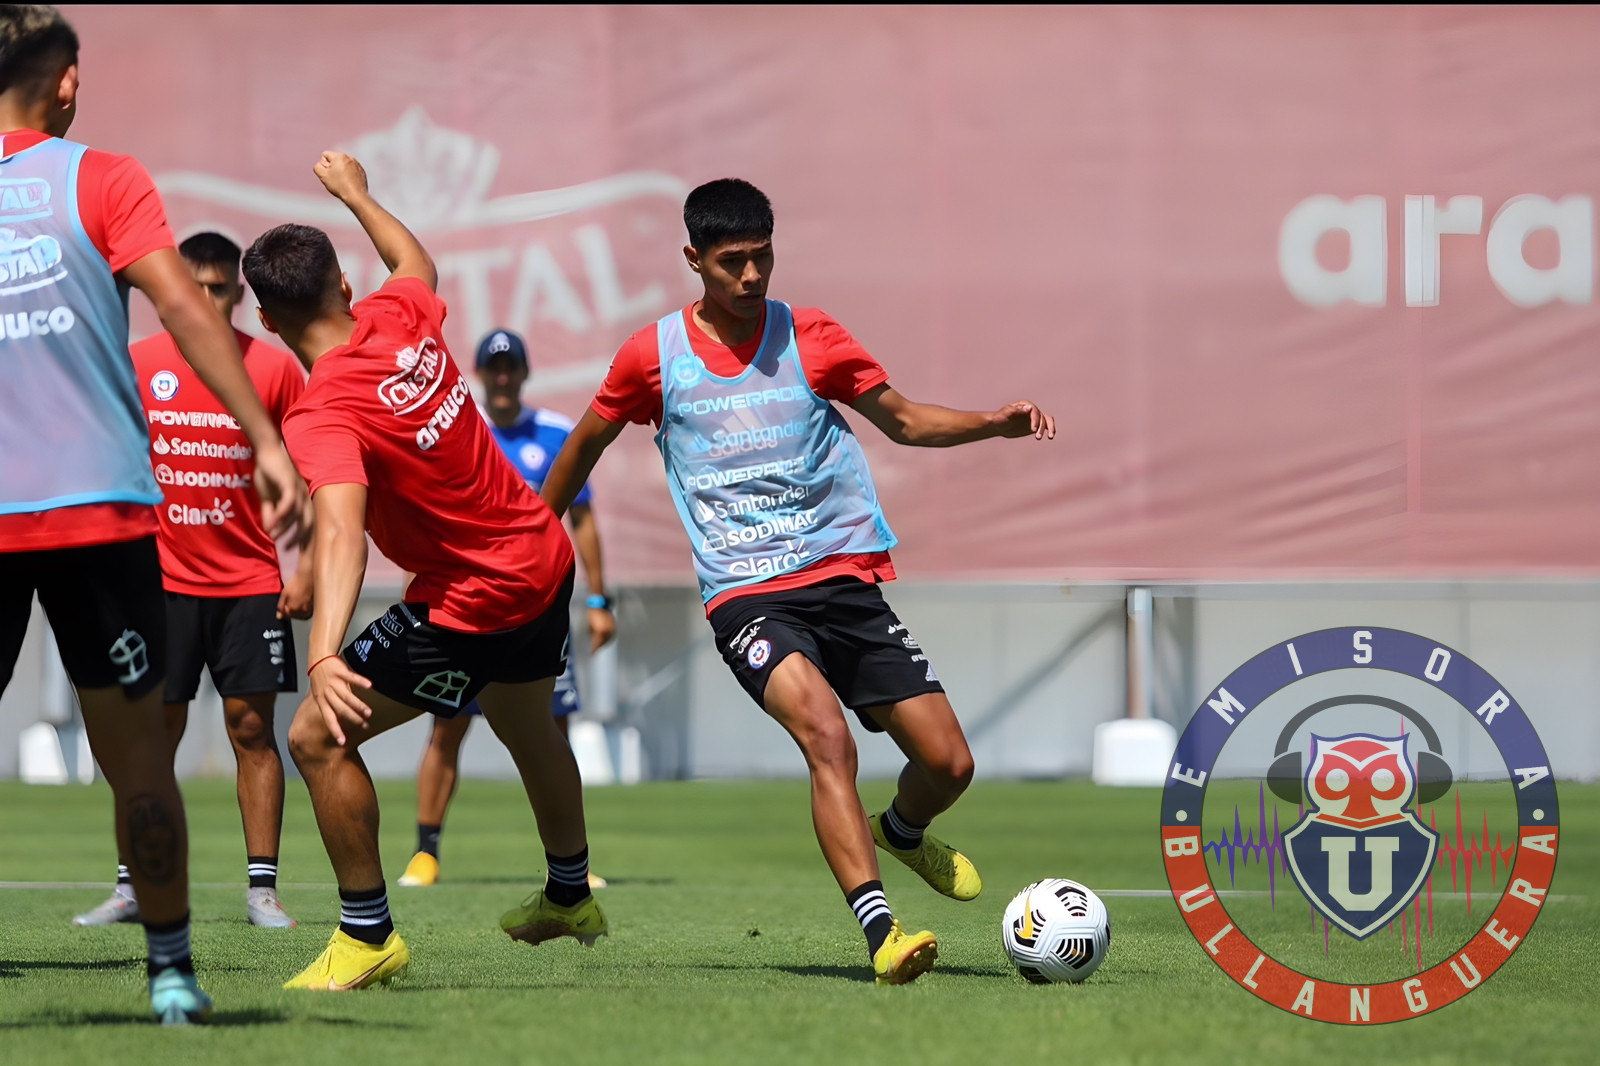 Darío Osorio no quiere saber nada sobre el interés de equipos europeos: “Estoy enfocado en hacer un buen Sudamericano”